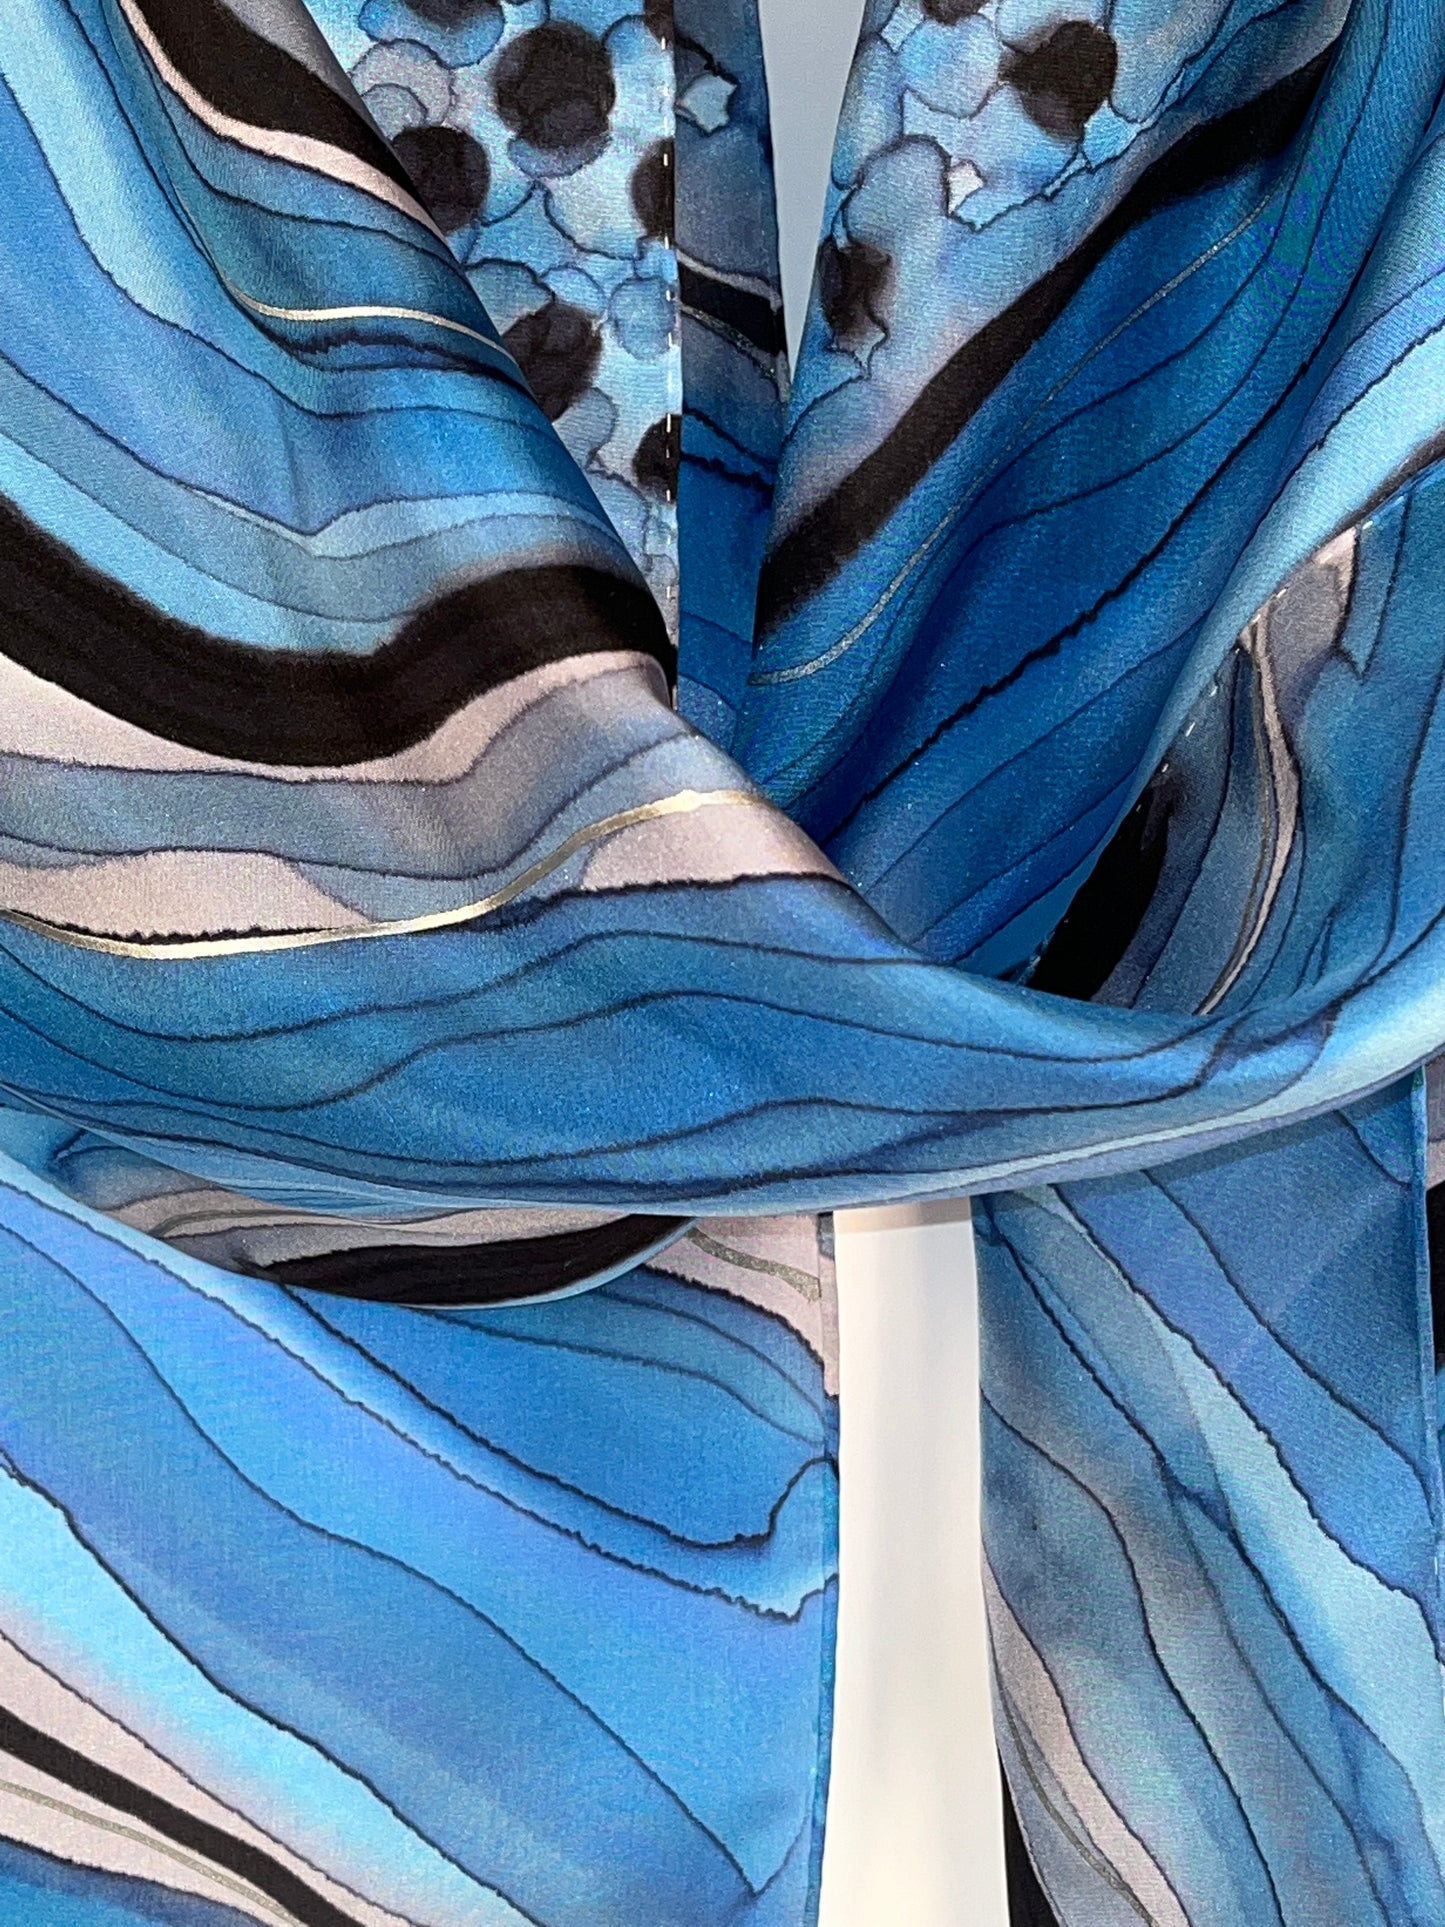 “Sapphire Geode" - Hand-dyed Silk Scarf - $125